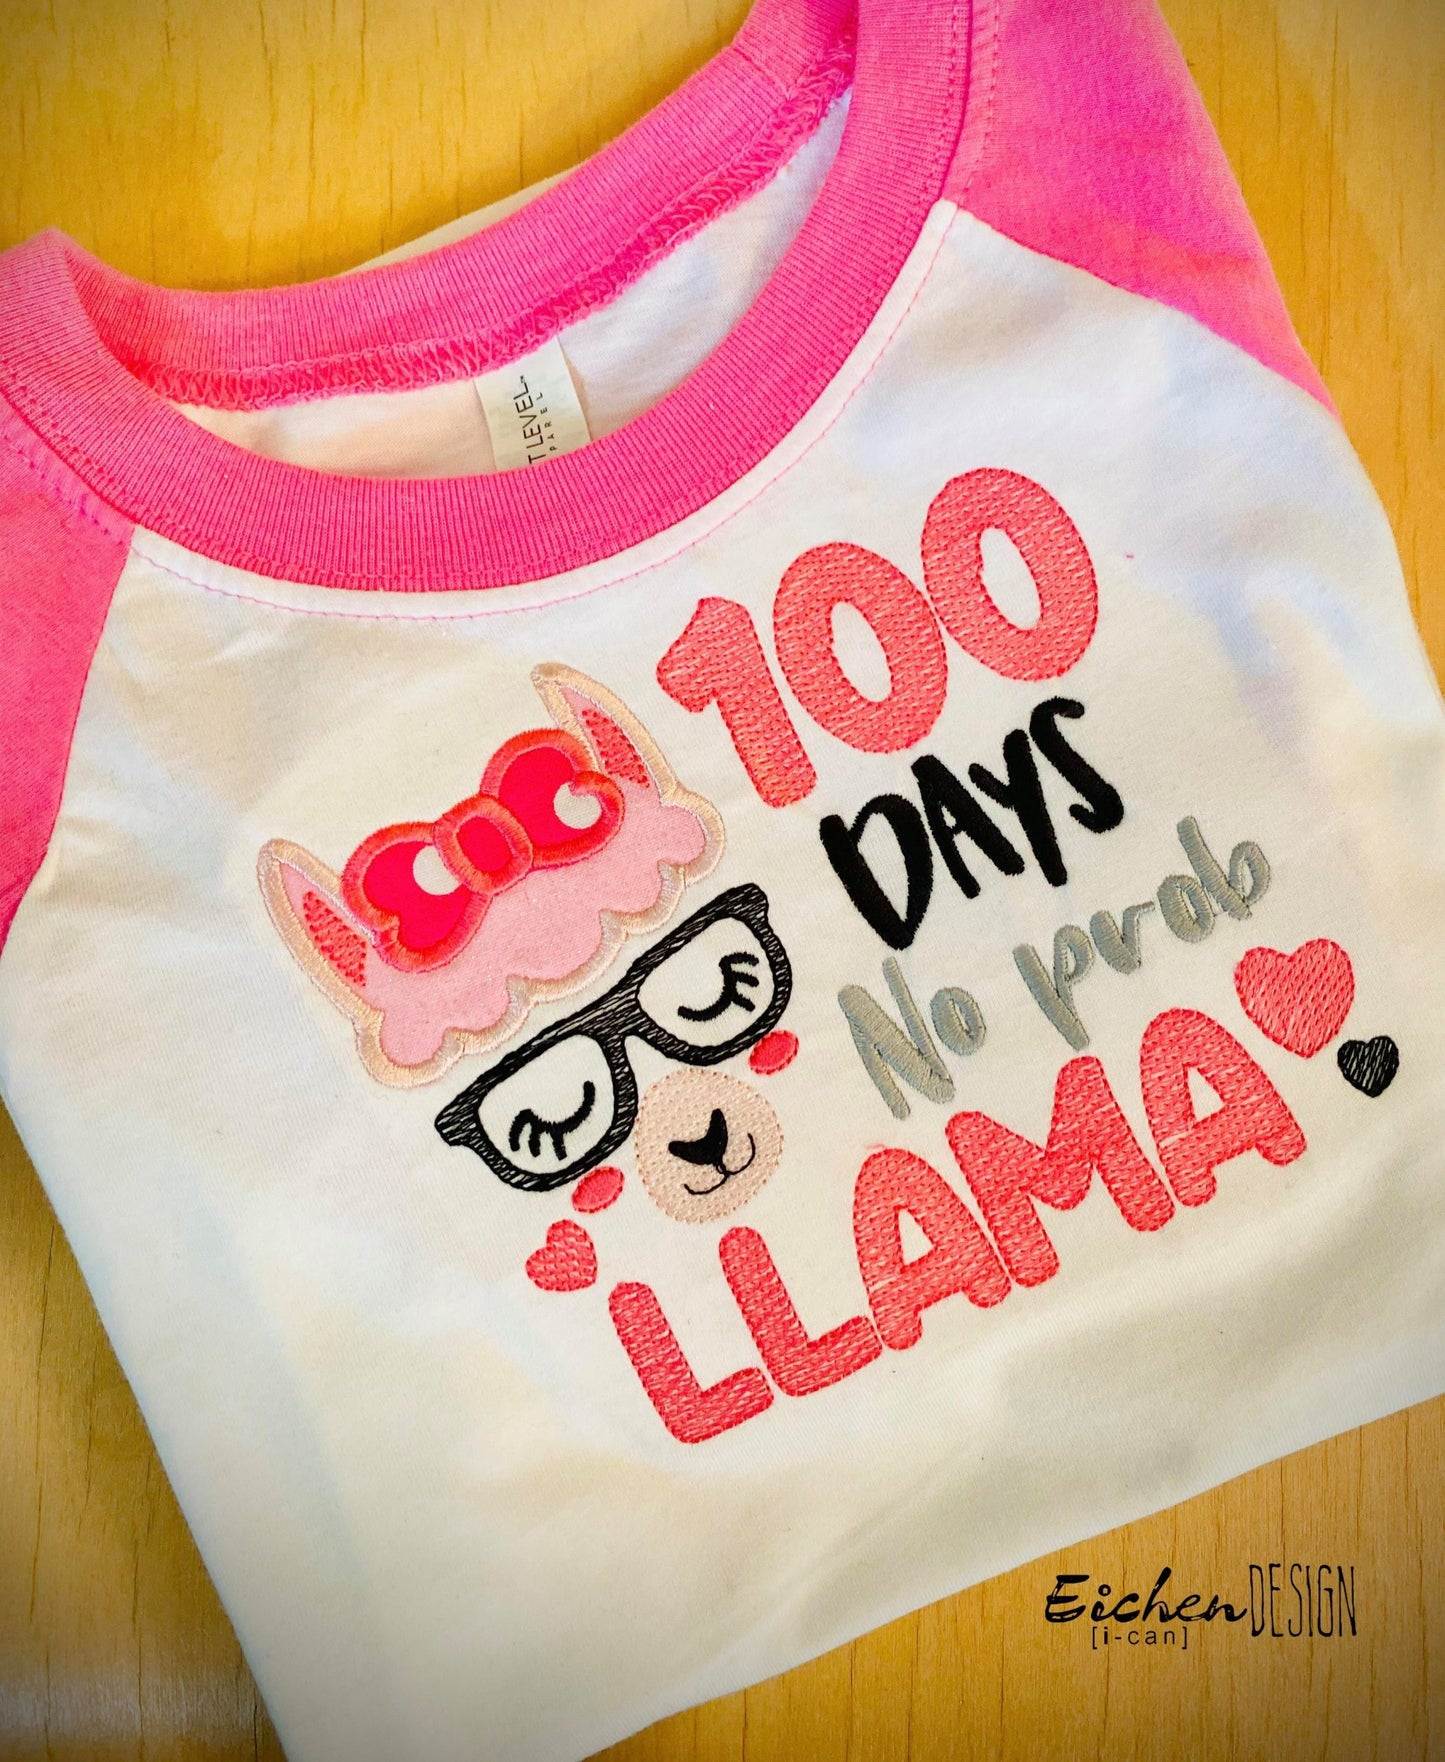 100 Days No Prob Llama - 2 sizes- Digital Embroidery Design